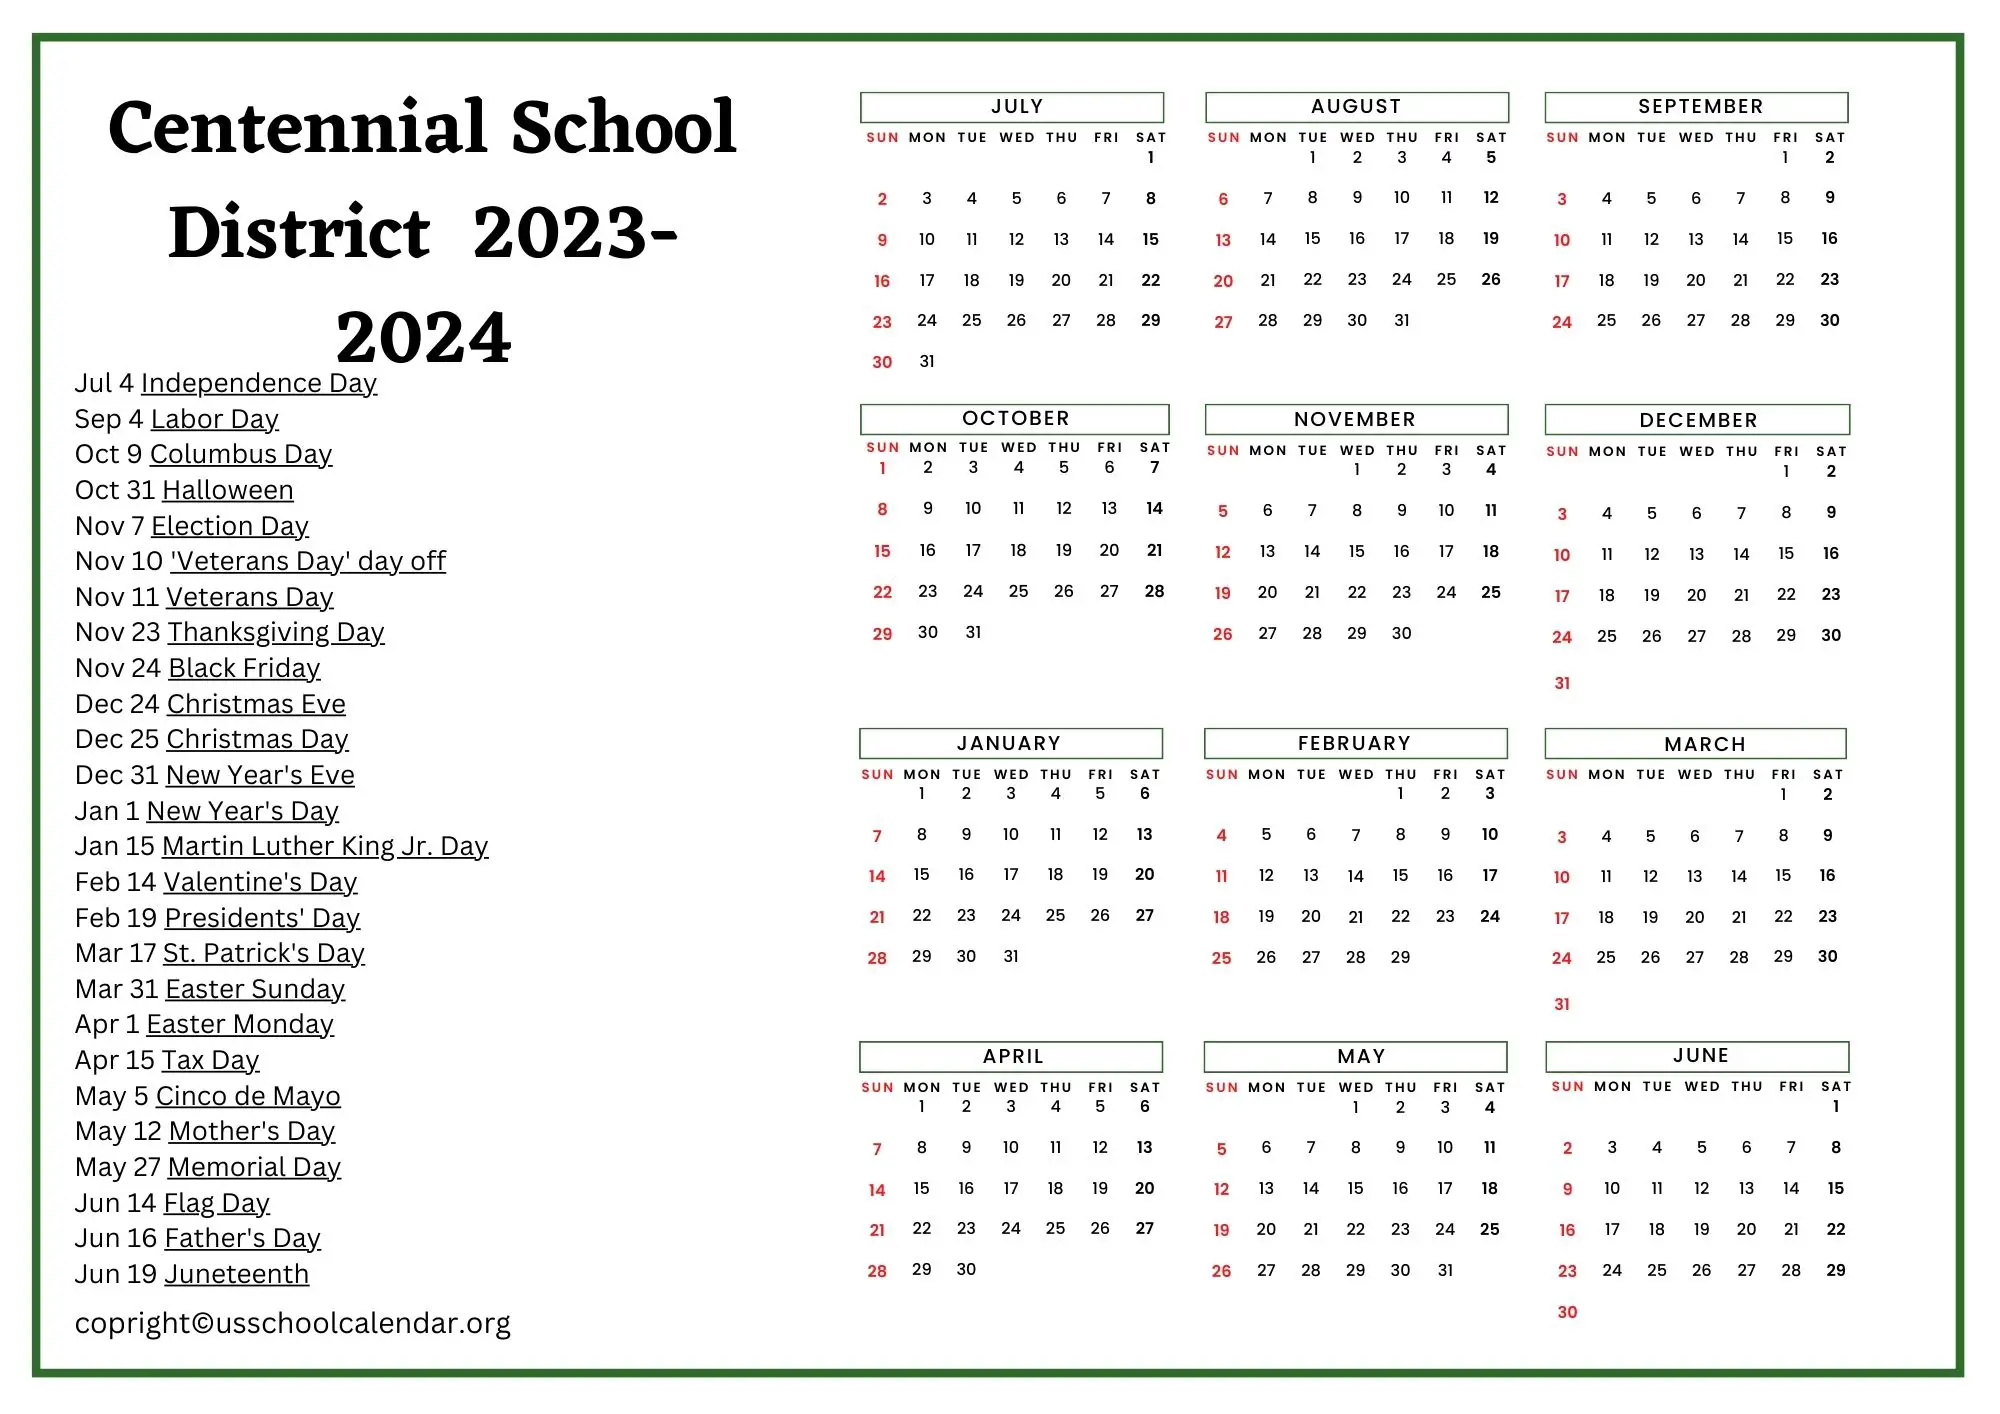 Centennial School District Calendar with Holidays 20232024